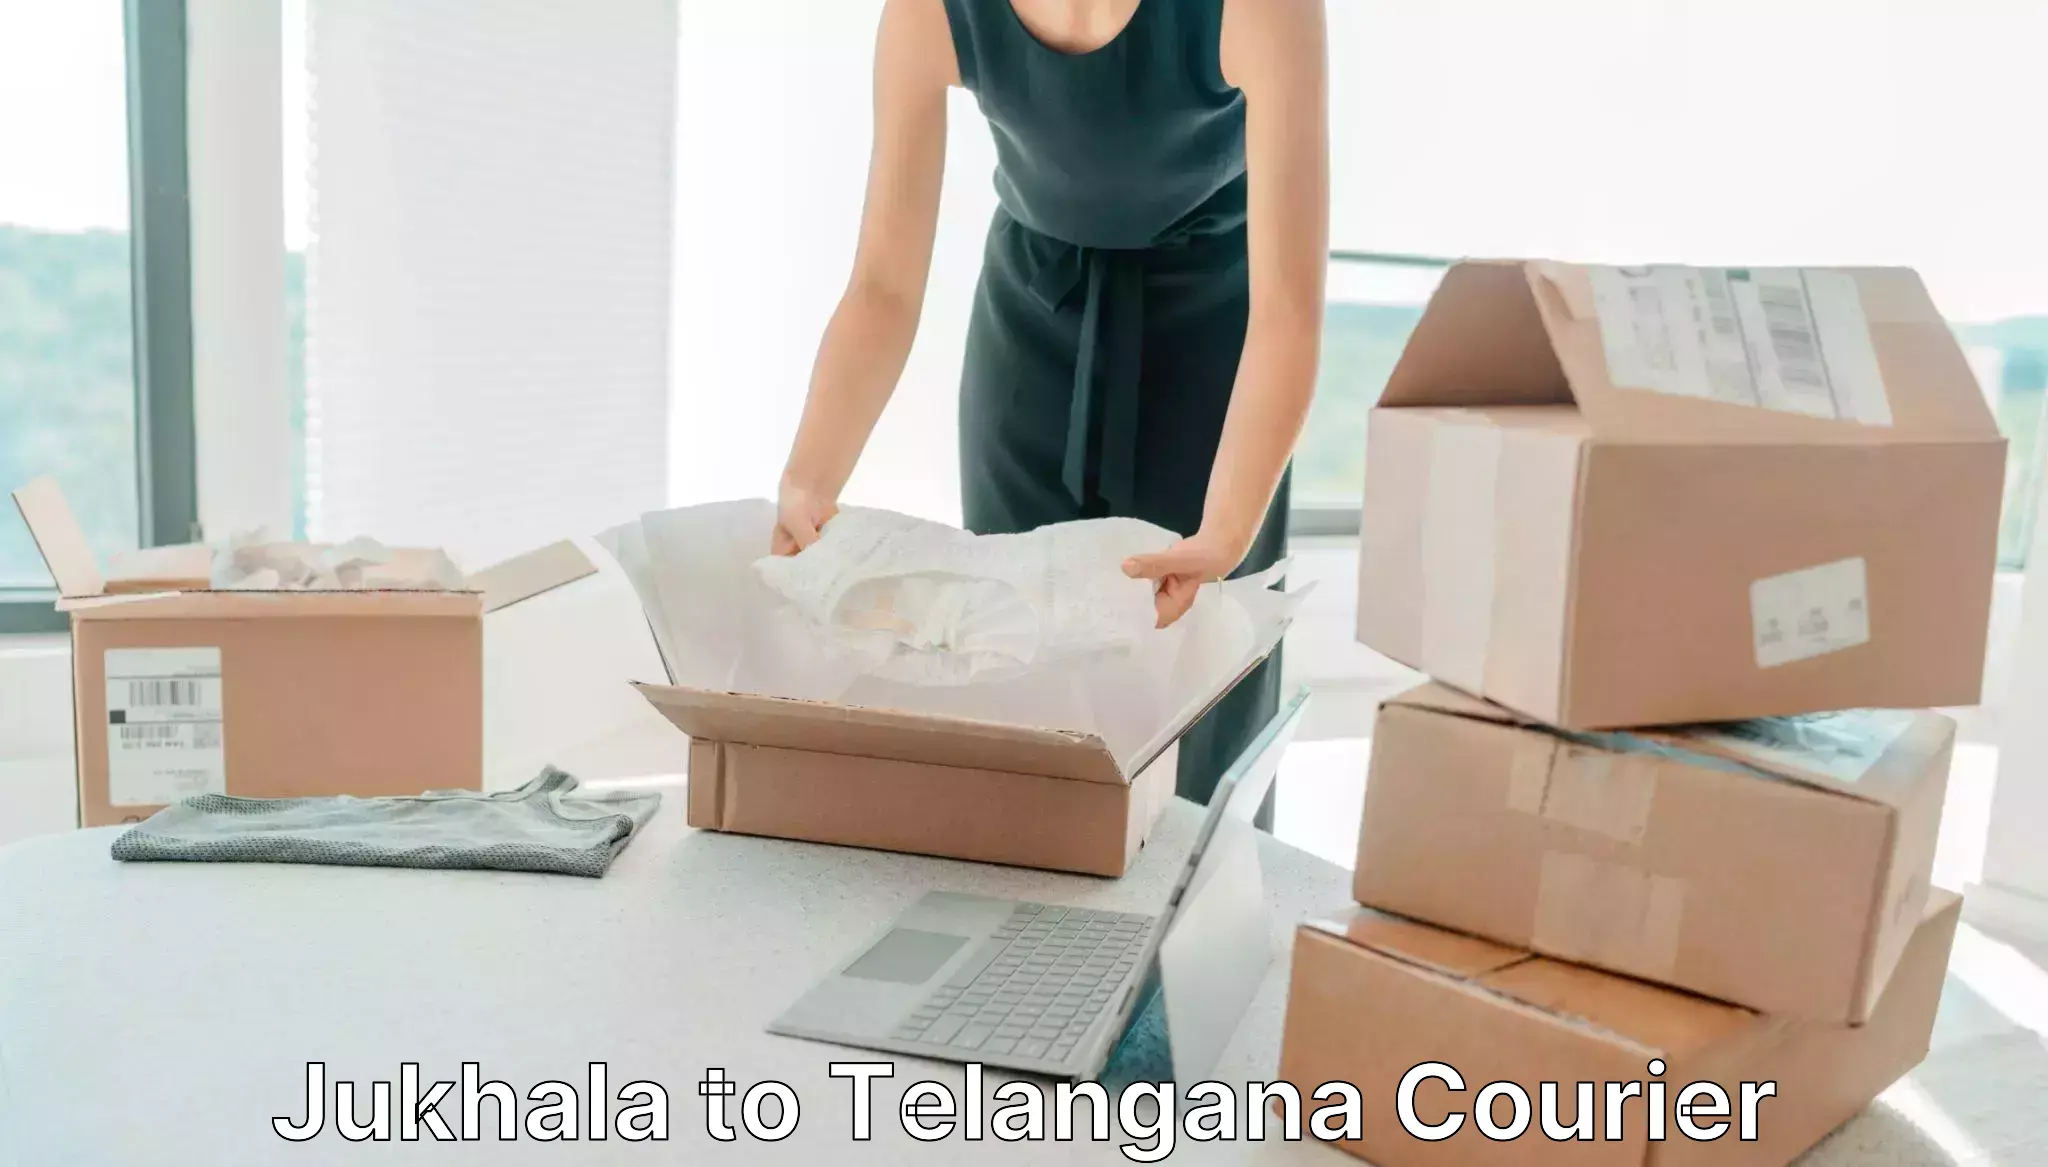 Customized delivery options Jukhala to Telangana